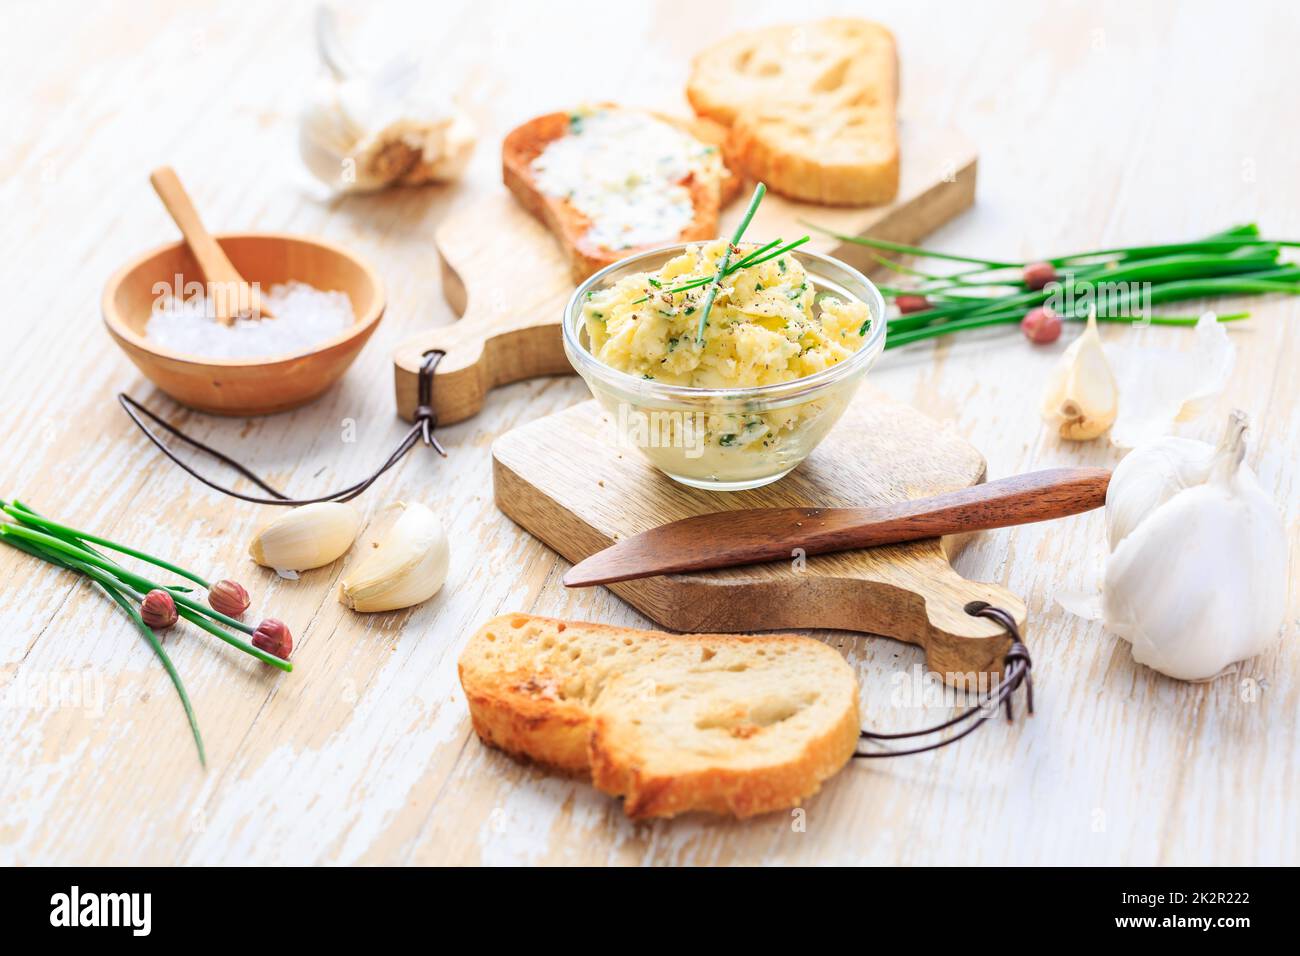 Burro all'aglio fatto in casa con erbe e erba cipollina e baguette fresca arrosto Foto Stock